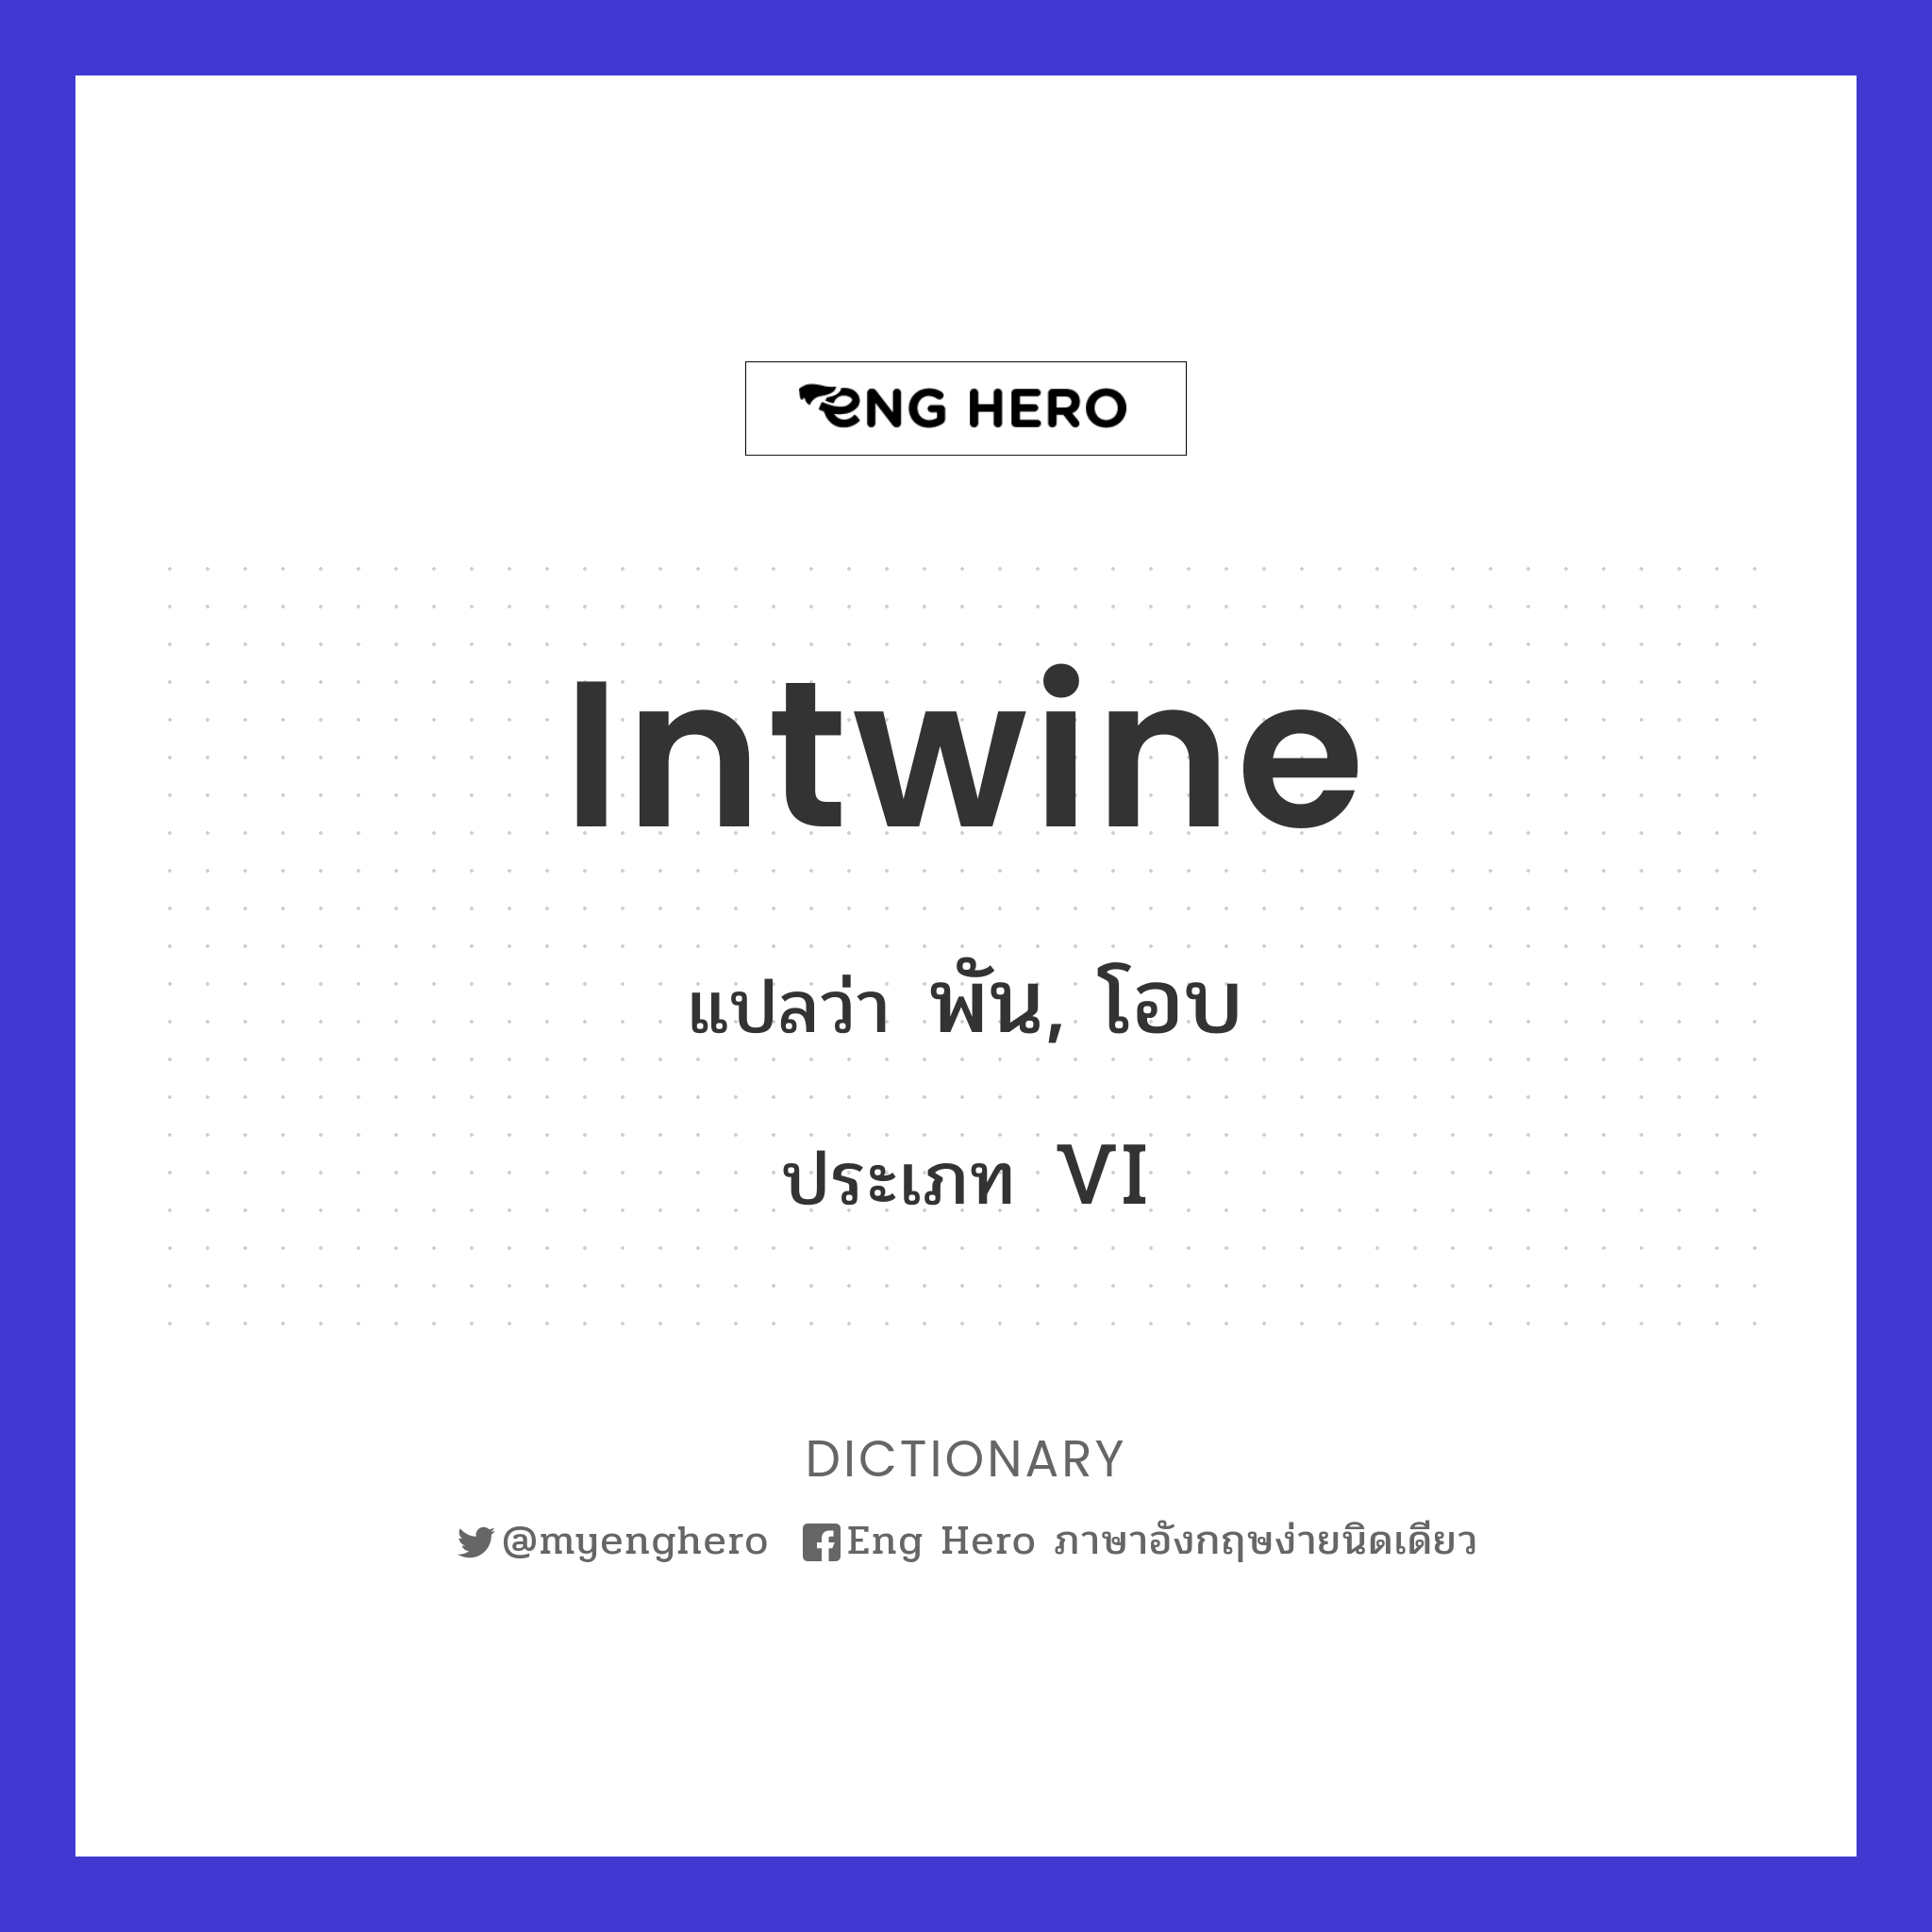 intwine